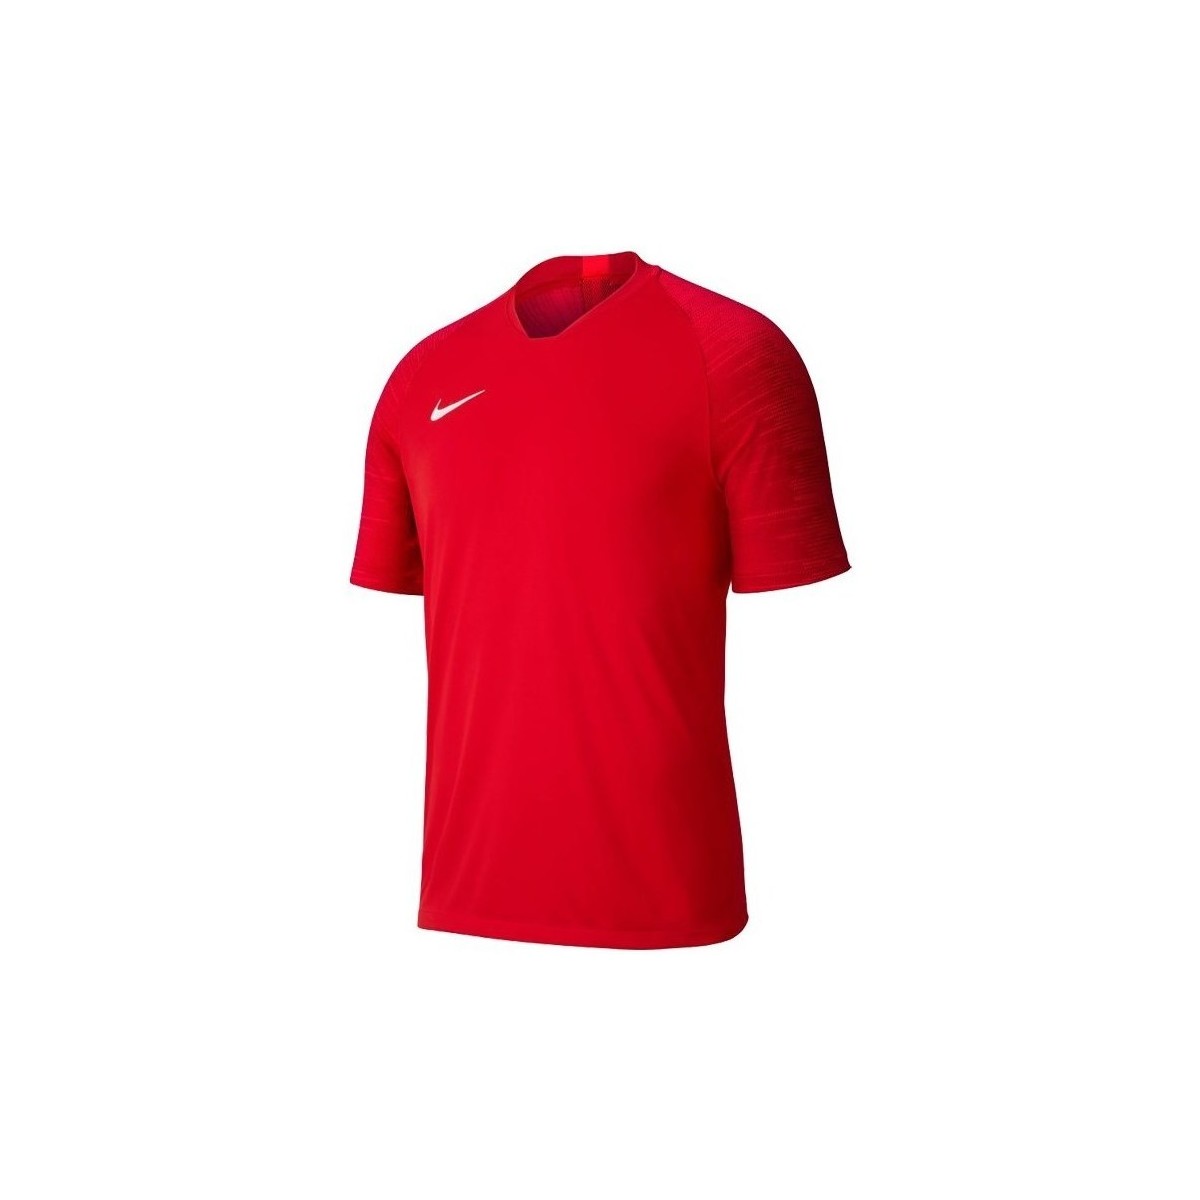 Textil Muži Trička s krátkým rukávem Nike Dry Strike Jersey Červená